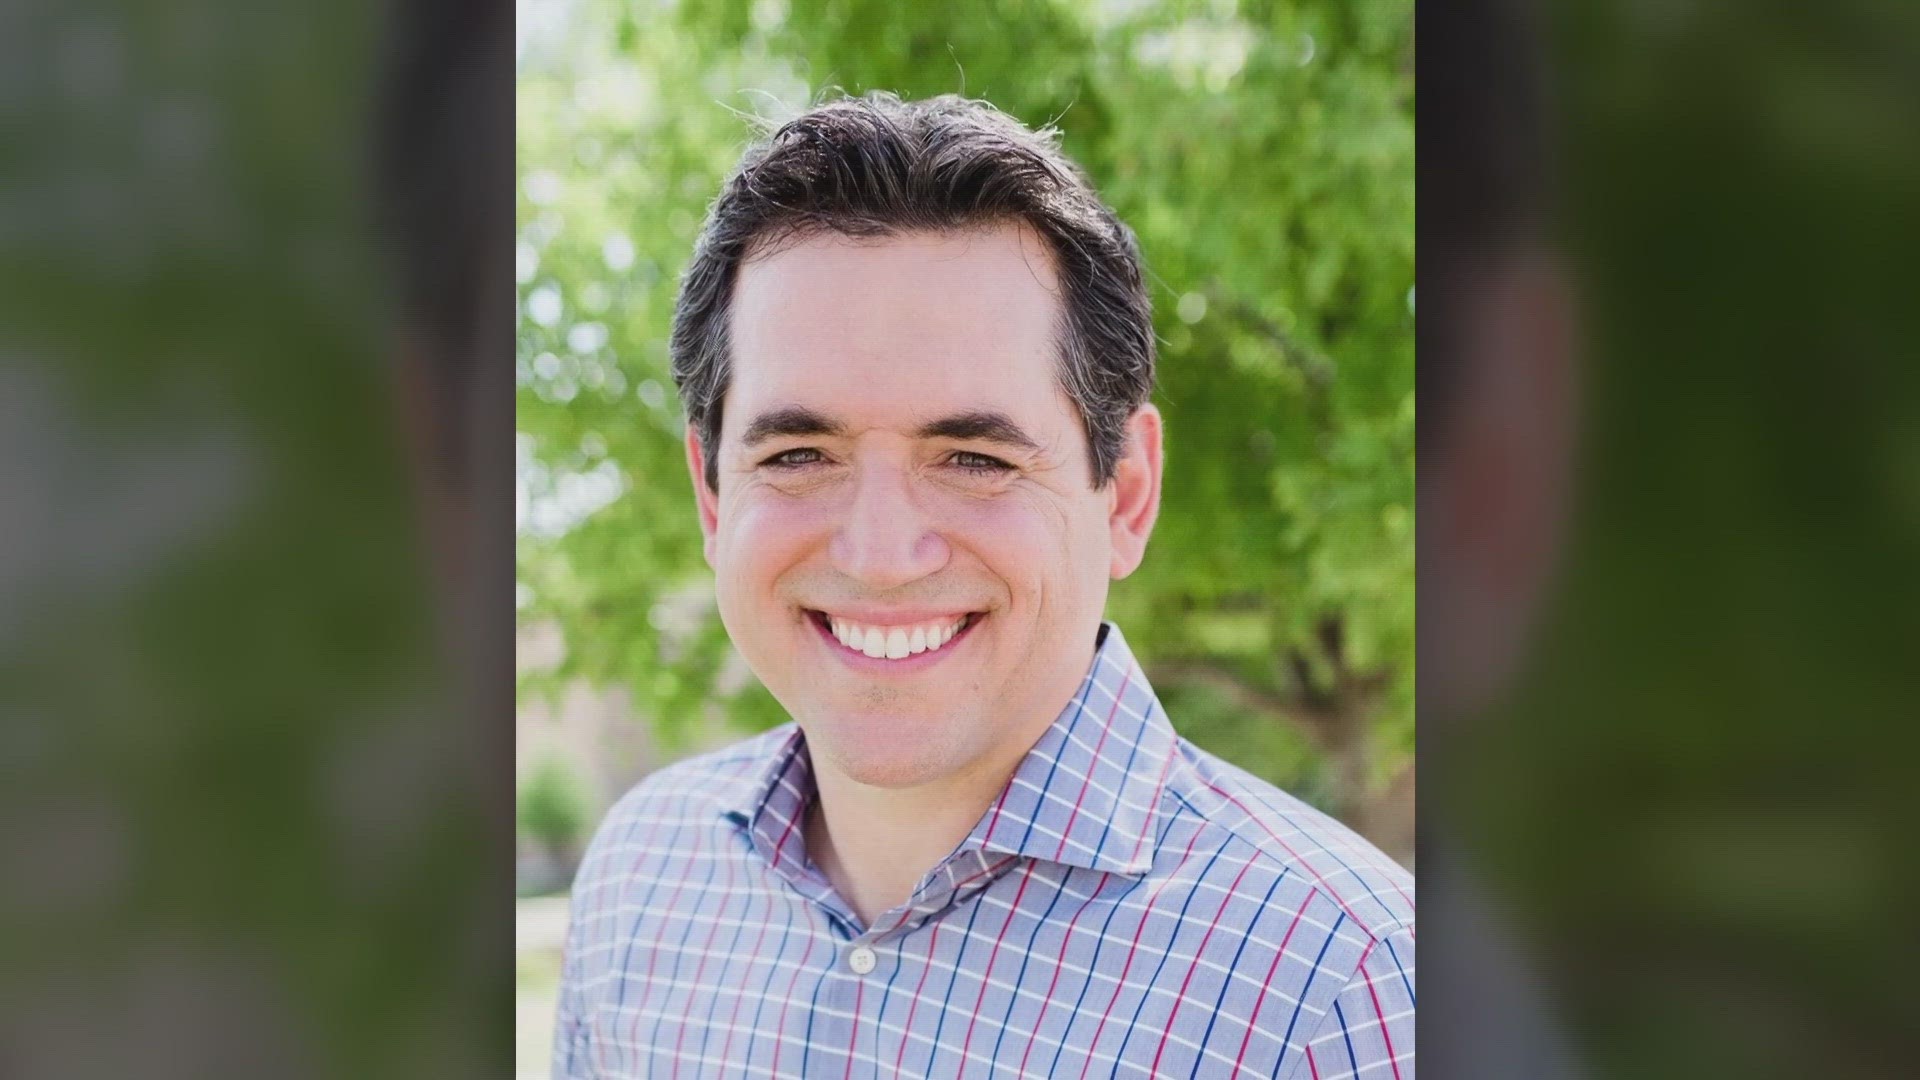 Matt Rinaldi, Texas GOP chair, won’t seek reelection.